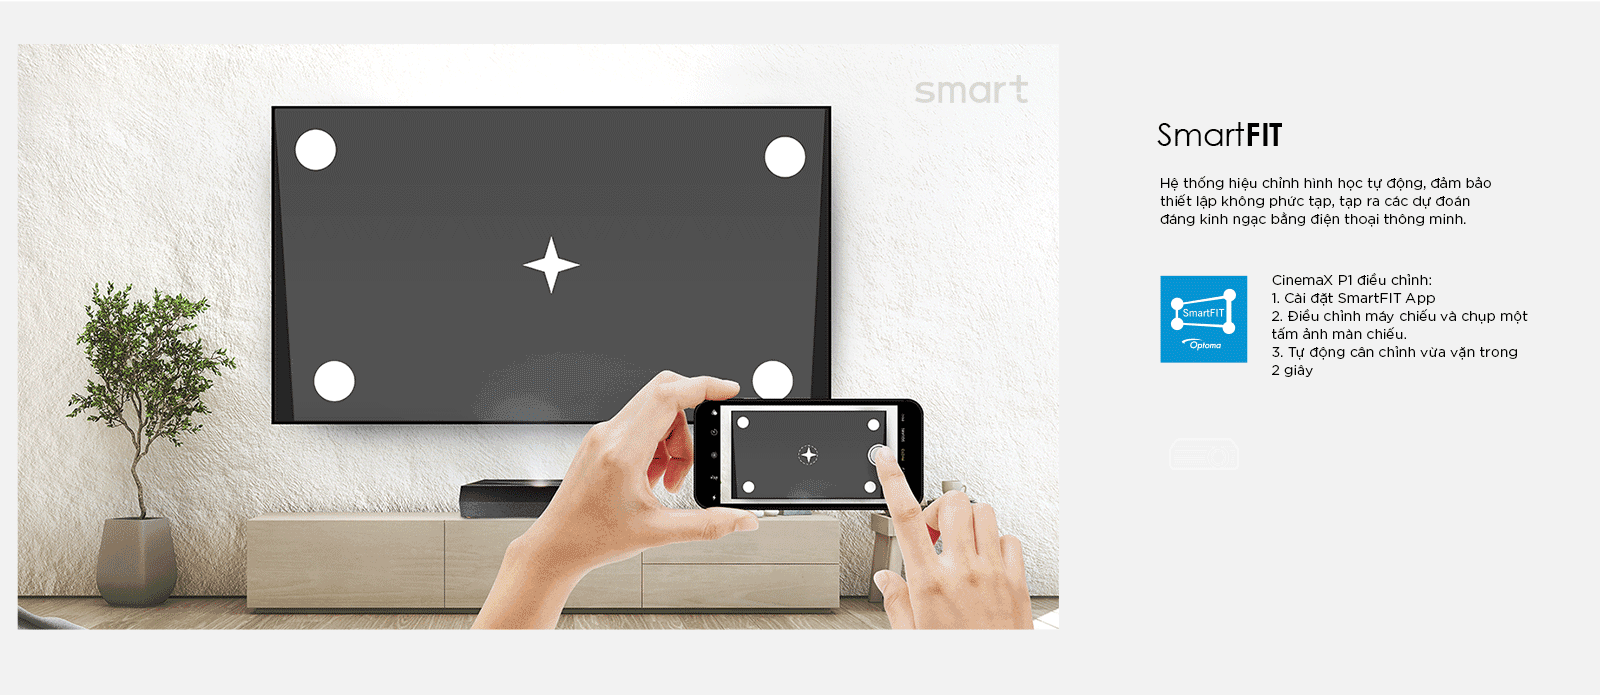 SmartFIT tự động căn chỉnh màn hình trên máy chiếu Optoma CinemaX P1